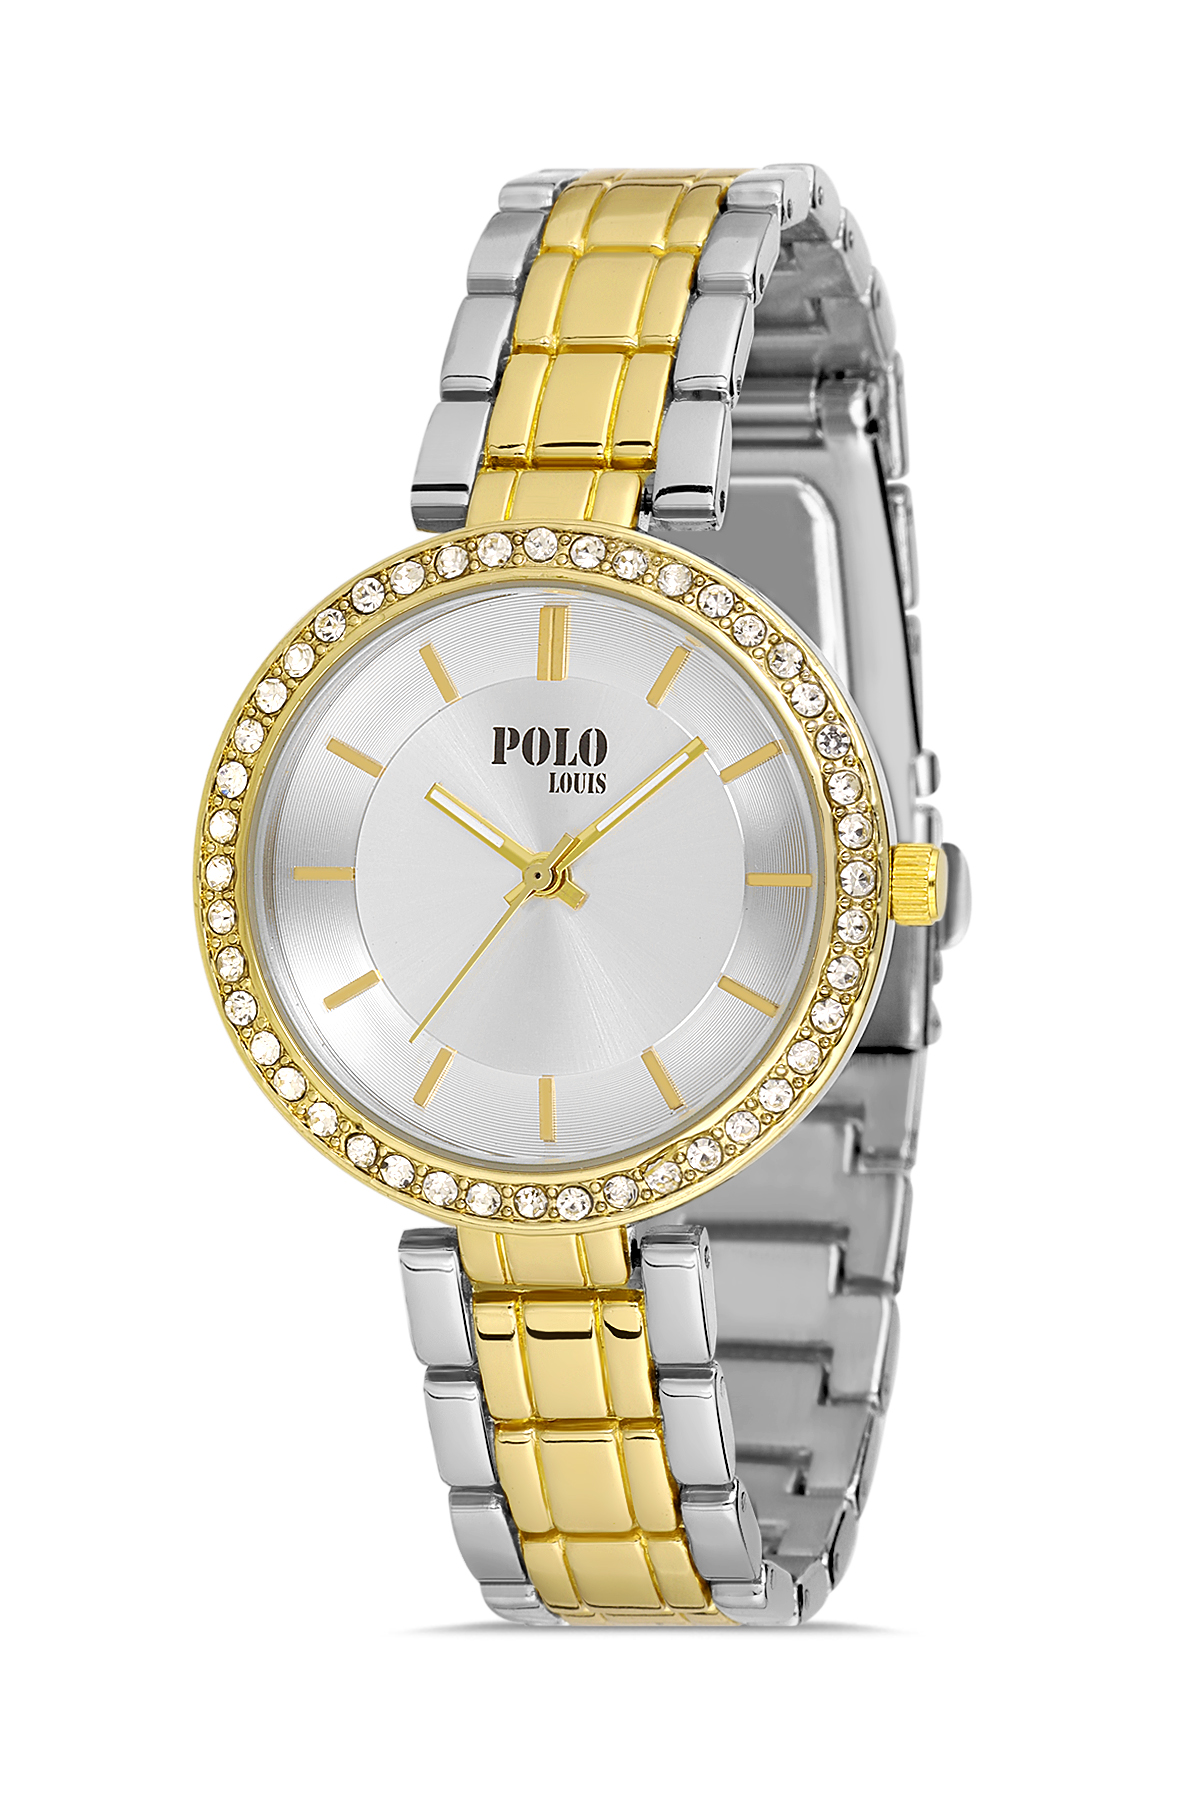 Polo Louis Lüx Tek Sıra Taşlı Şık Kadın Kol Saati Gümüş-Altın Renk PL-1474B4x